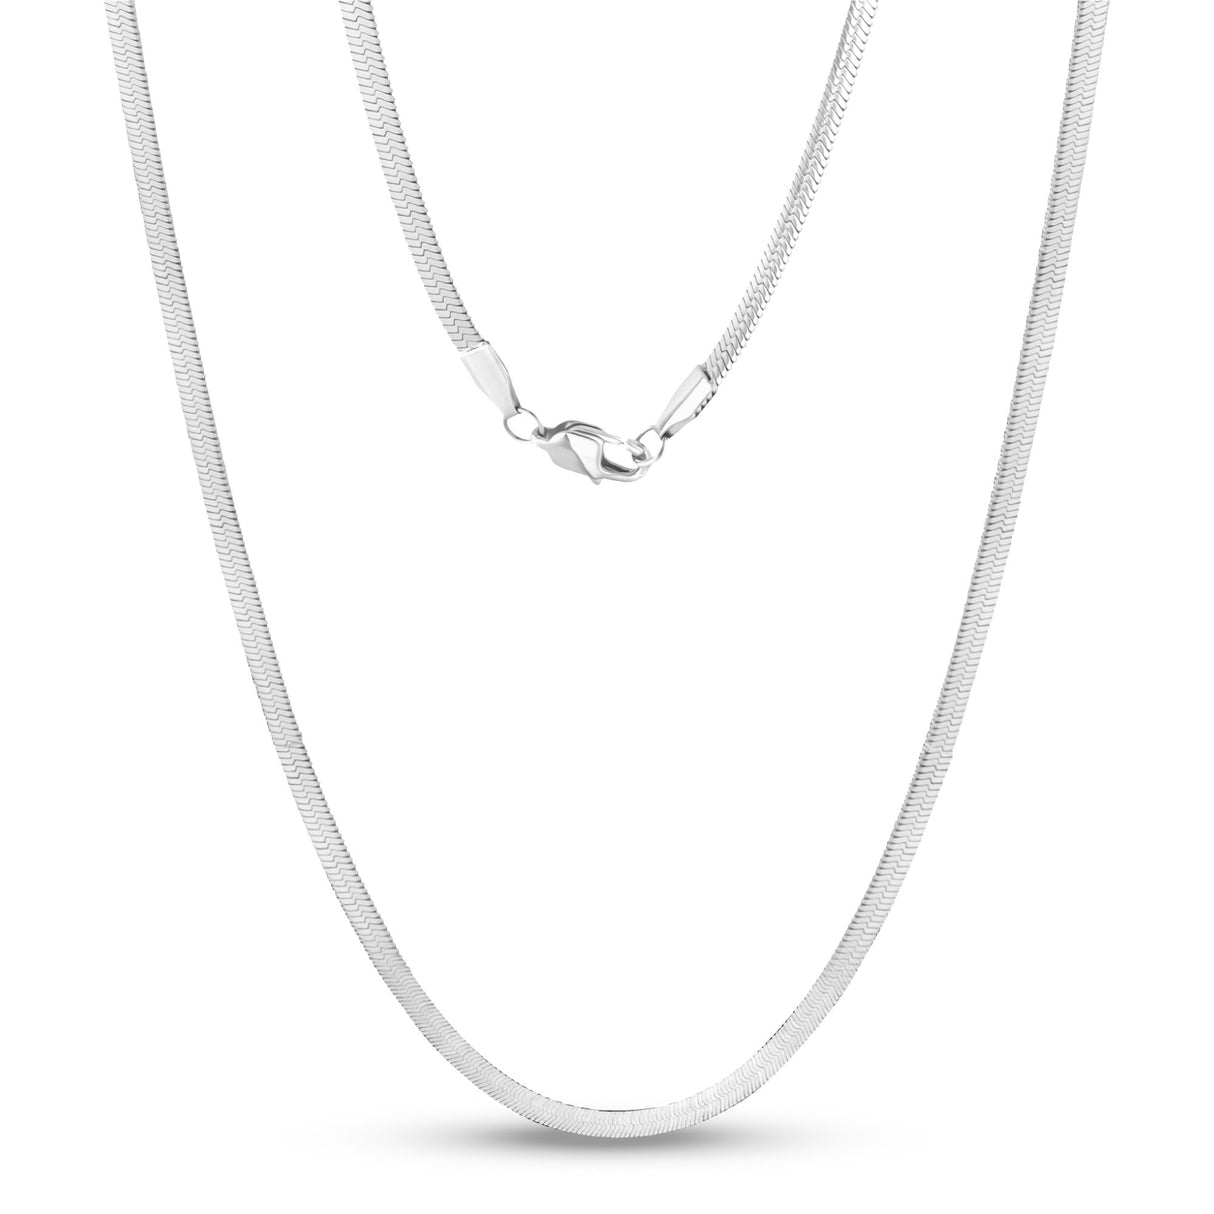 Halsketten für Frauen - 4mm Edelstahl Fischgrätenkette Halskette